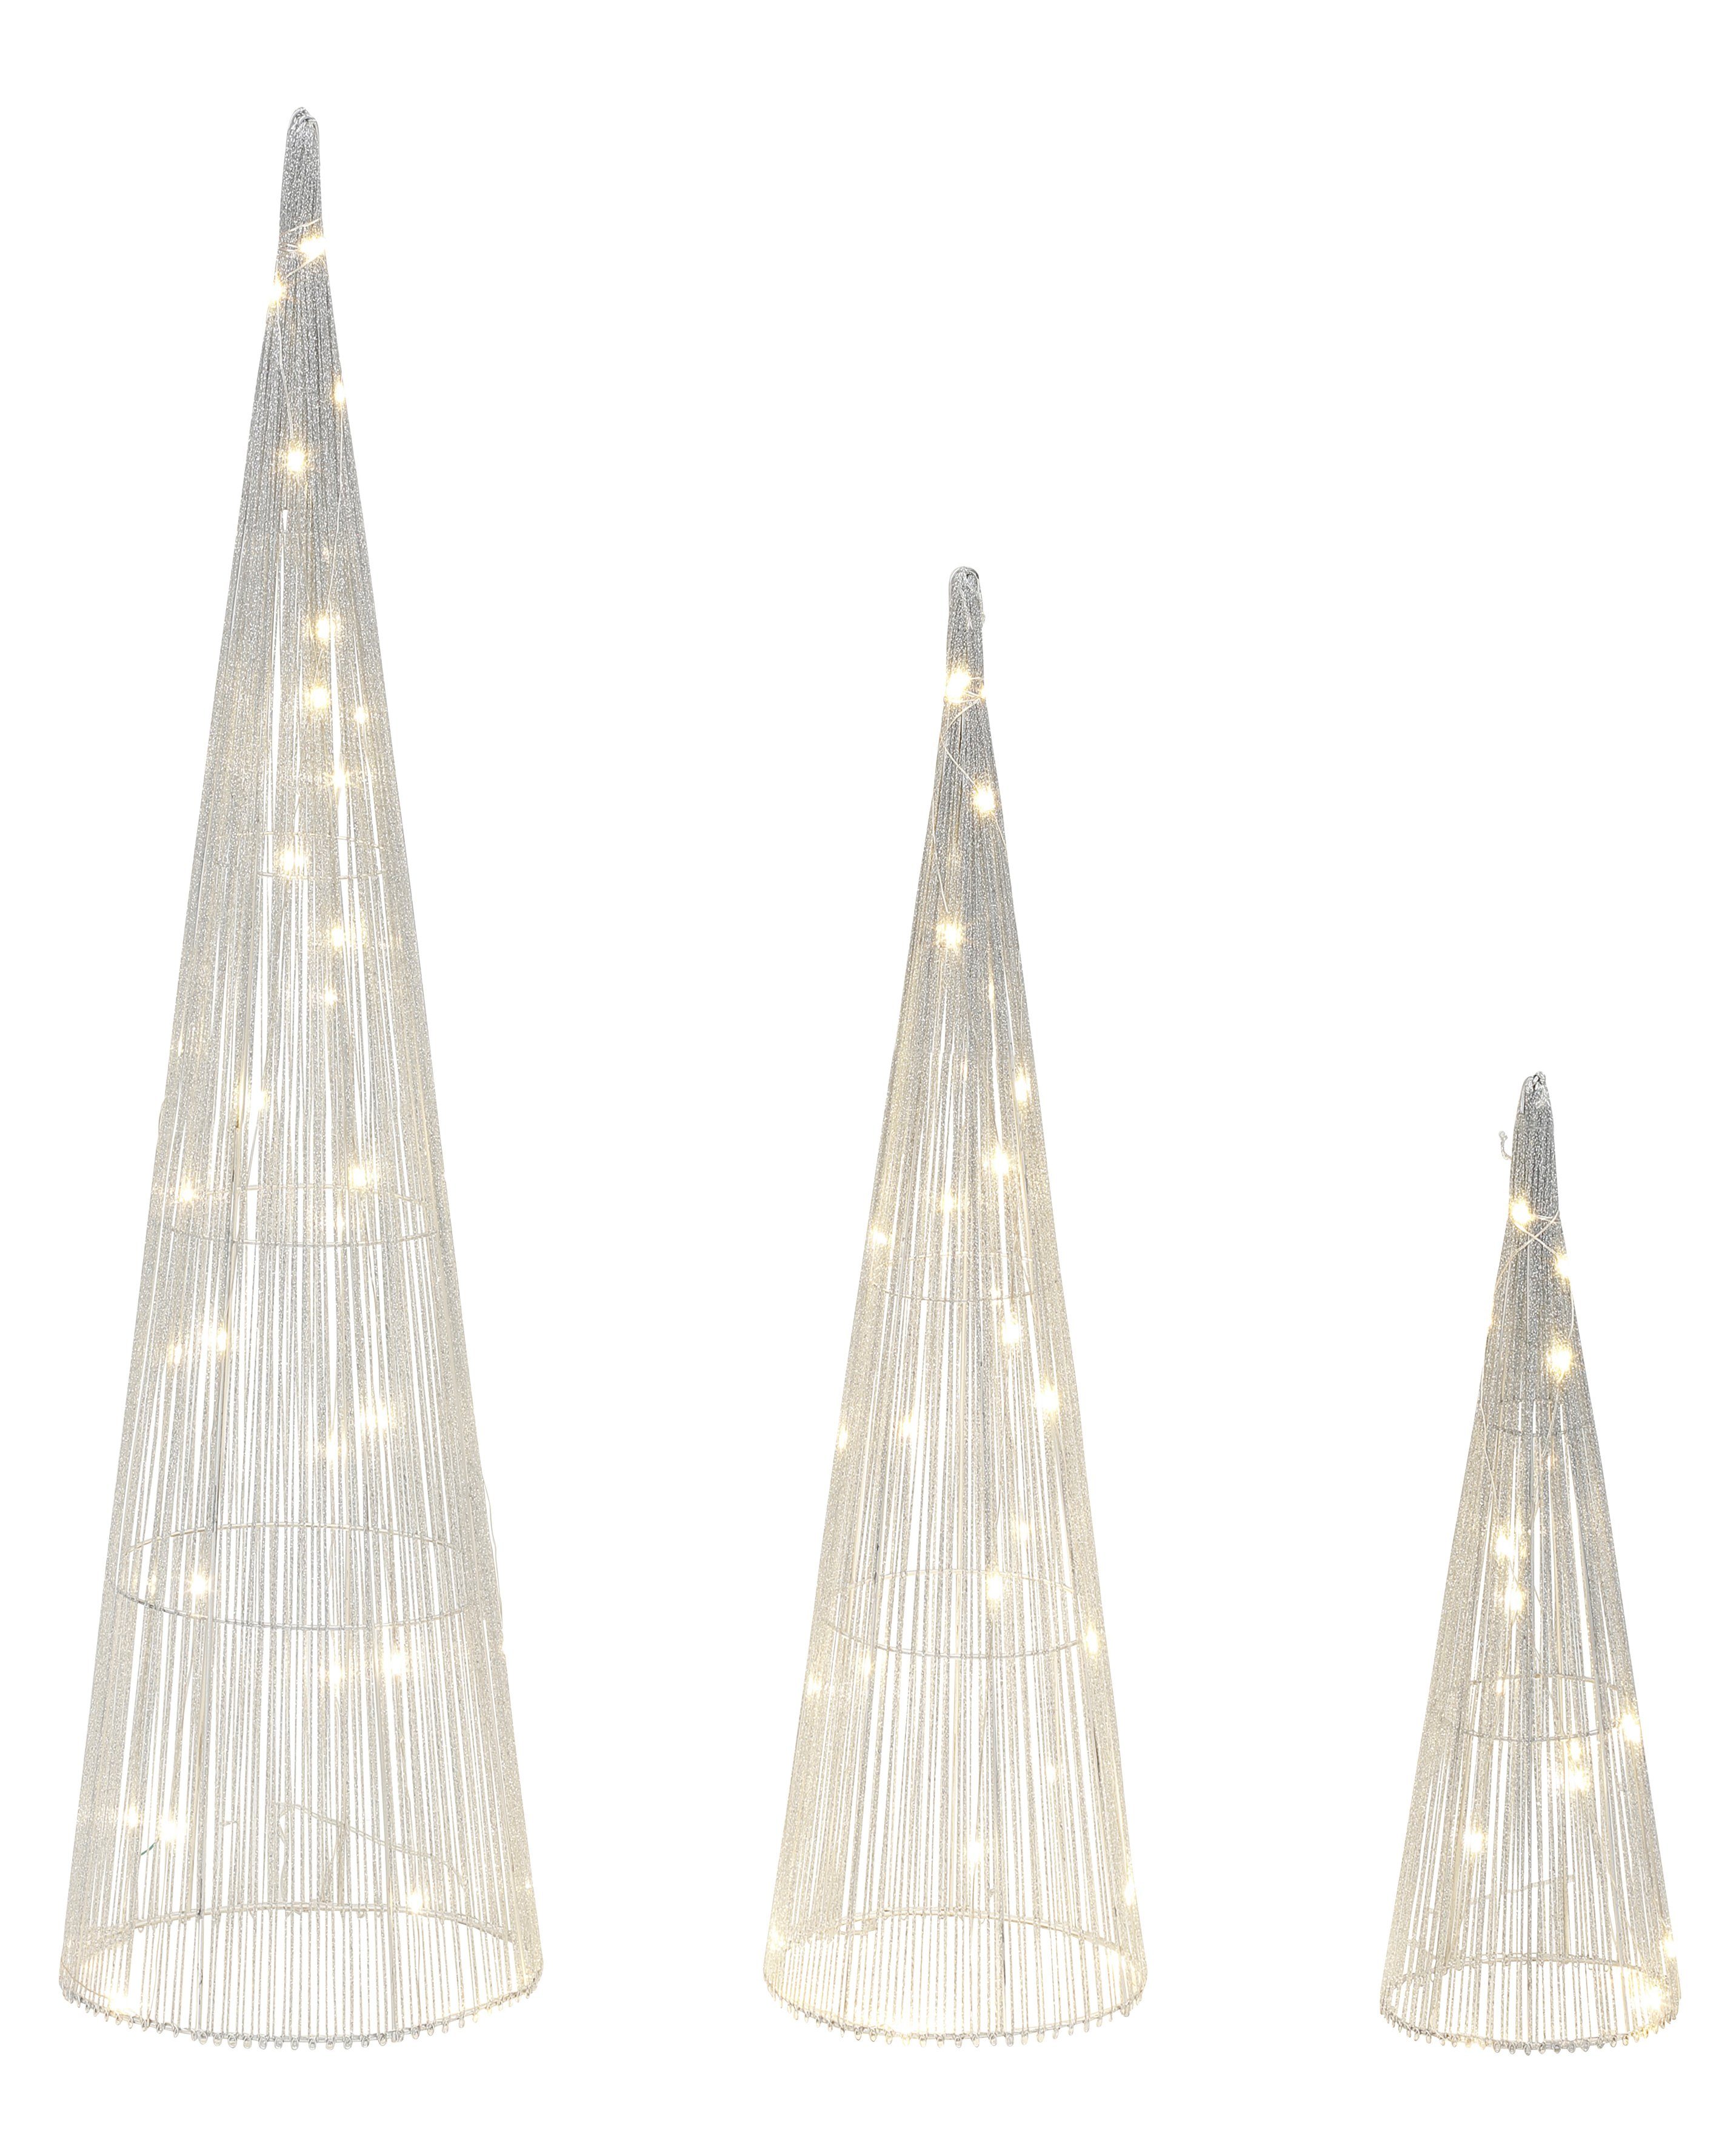 3 in LED integriert, Leucht fest silberfarben Größen LED-Beleuchtung, mit schimmernde Star-Max Pyramiden Weihnachtsdeko, LED-Bäume, Dekolicht LED Warmweiß, Pyramiden Effektvolle